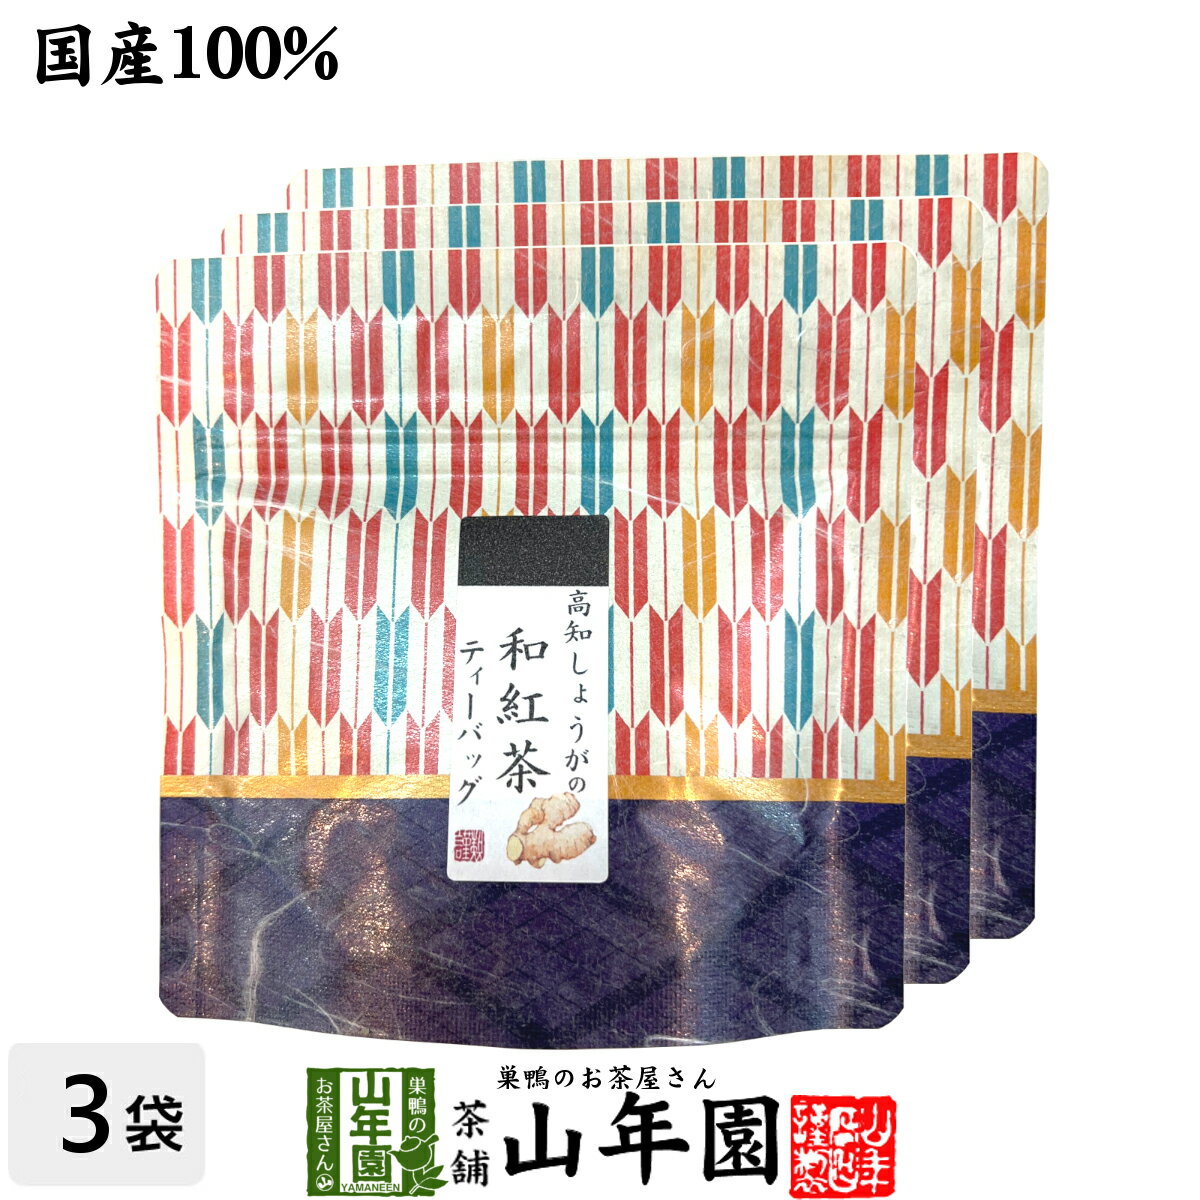 【国産100%】高知しょうがの和紅茶 2g×5パック×3袋セット送料無料 静岡県産紅茶 高知県産しょうが 国産 生姜 日本茶 …